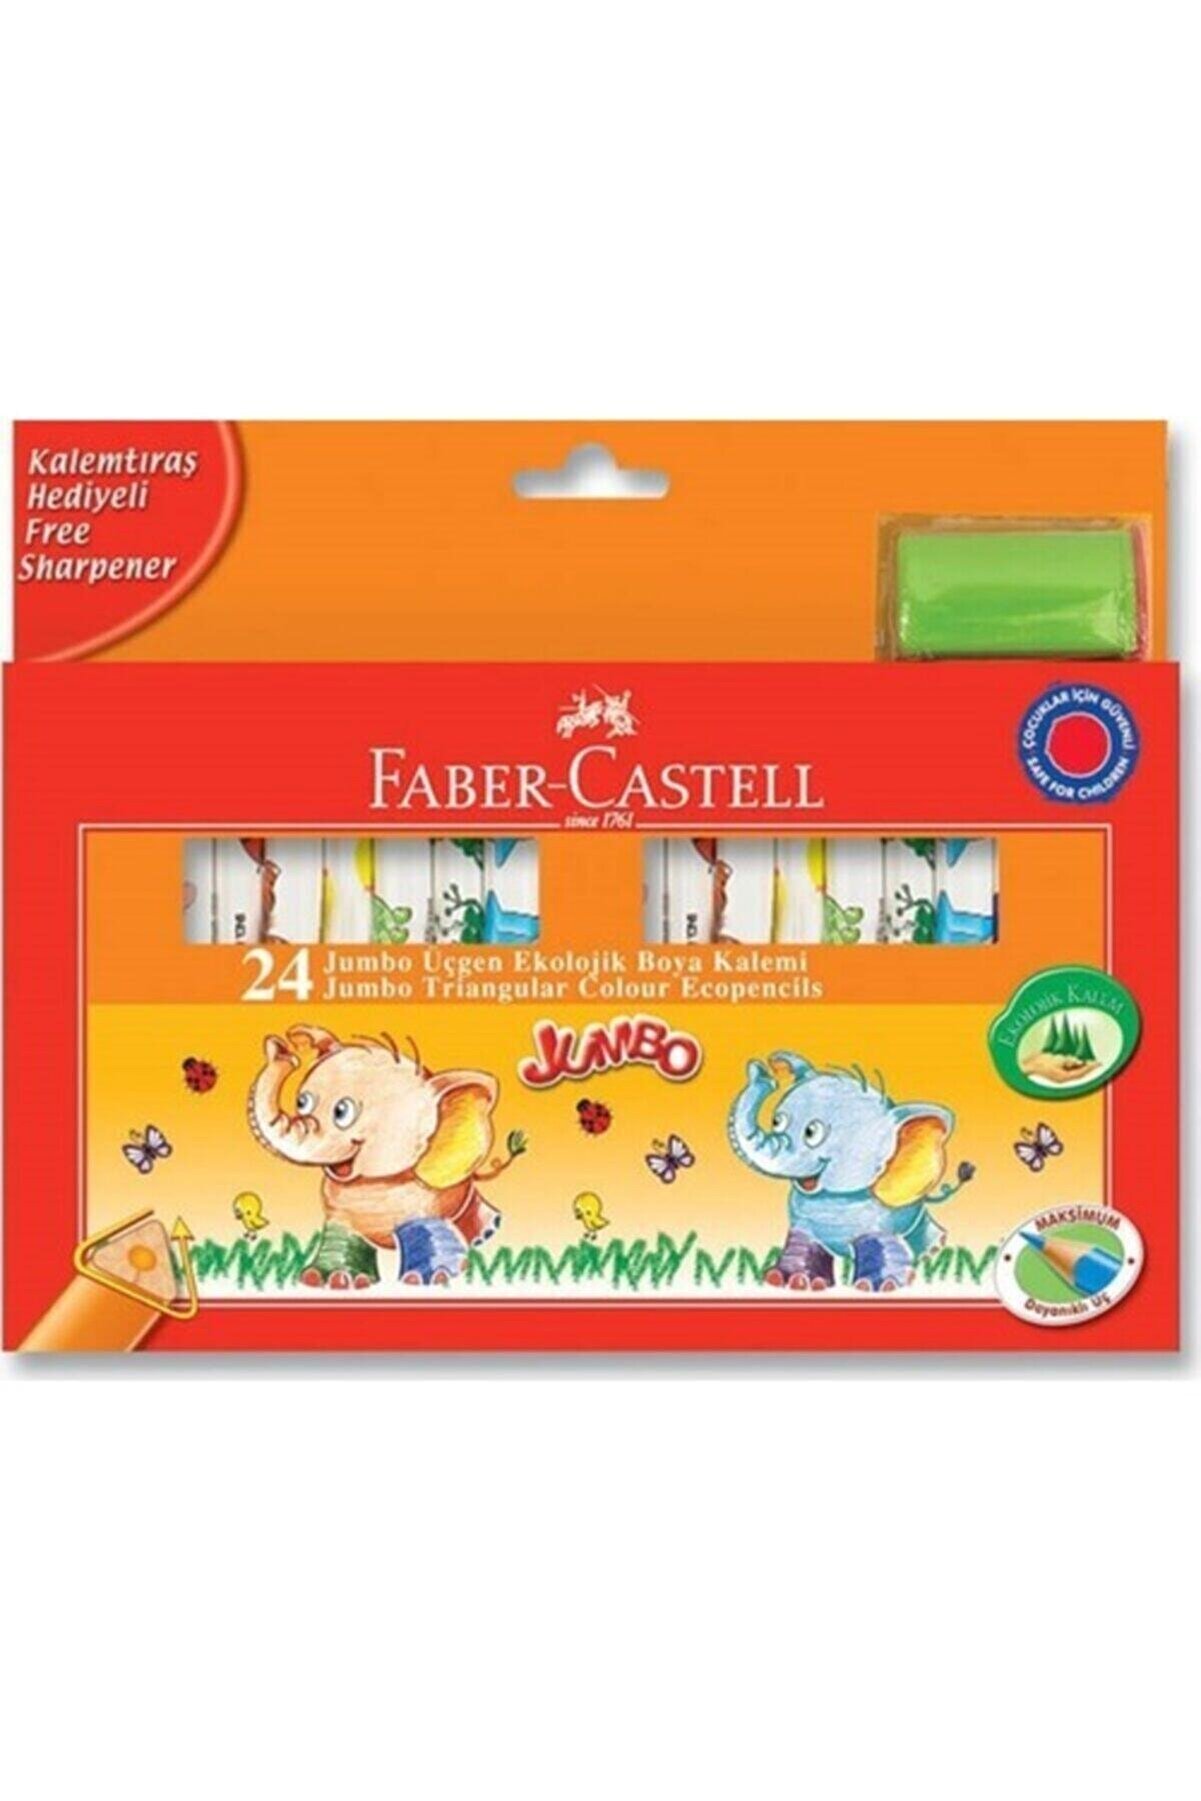 Faber Castell Faber-castell Jumbo Üçgen Ekolojik Boya Kalemi 24 Renk